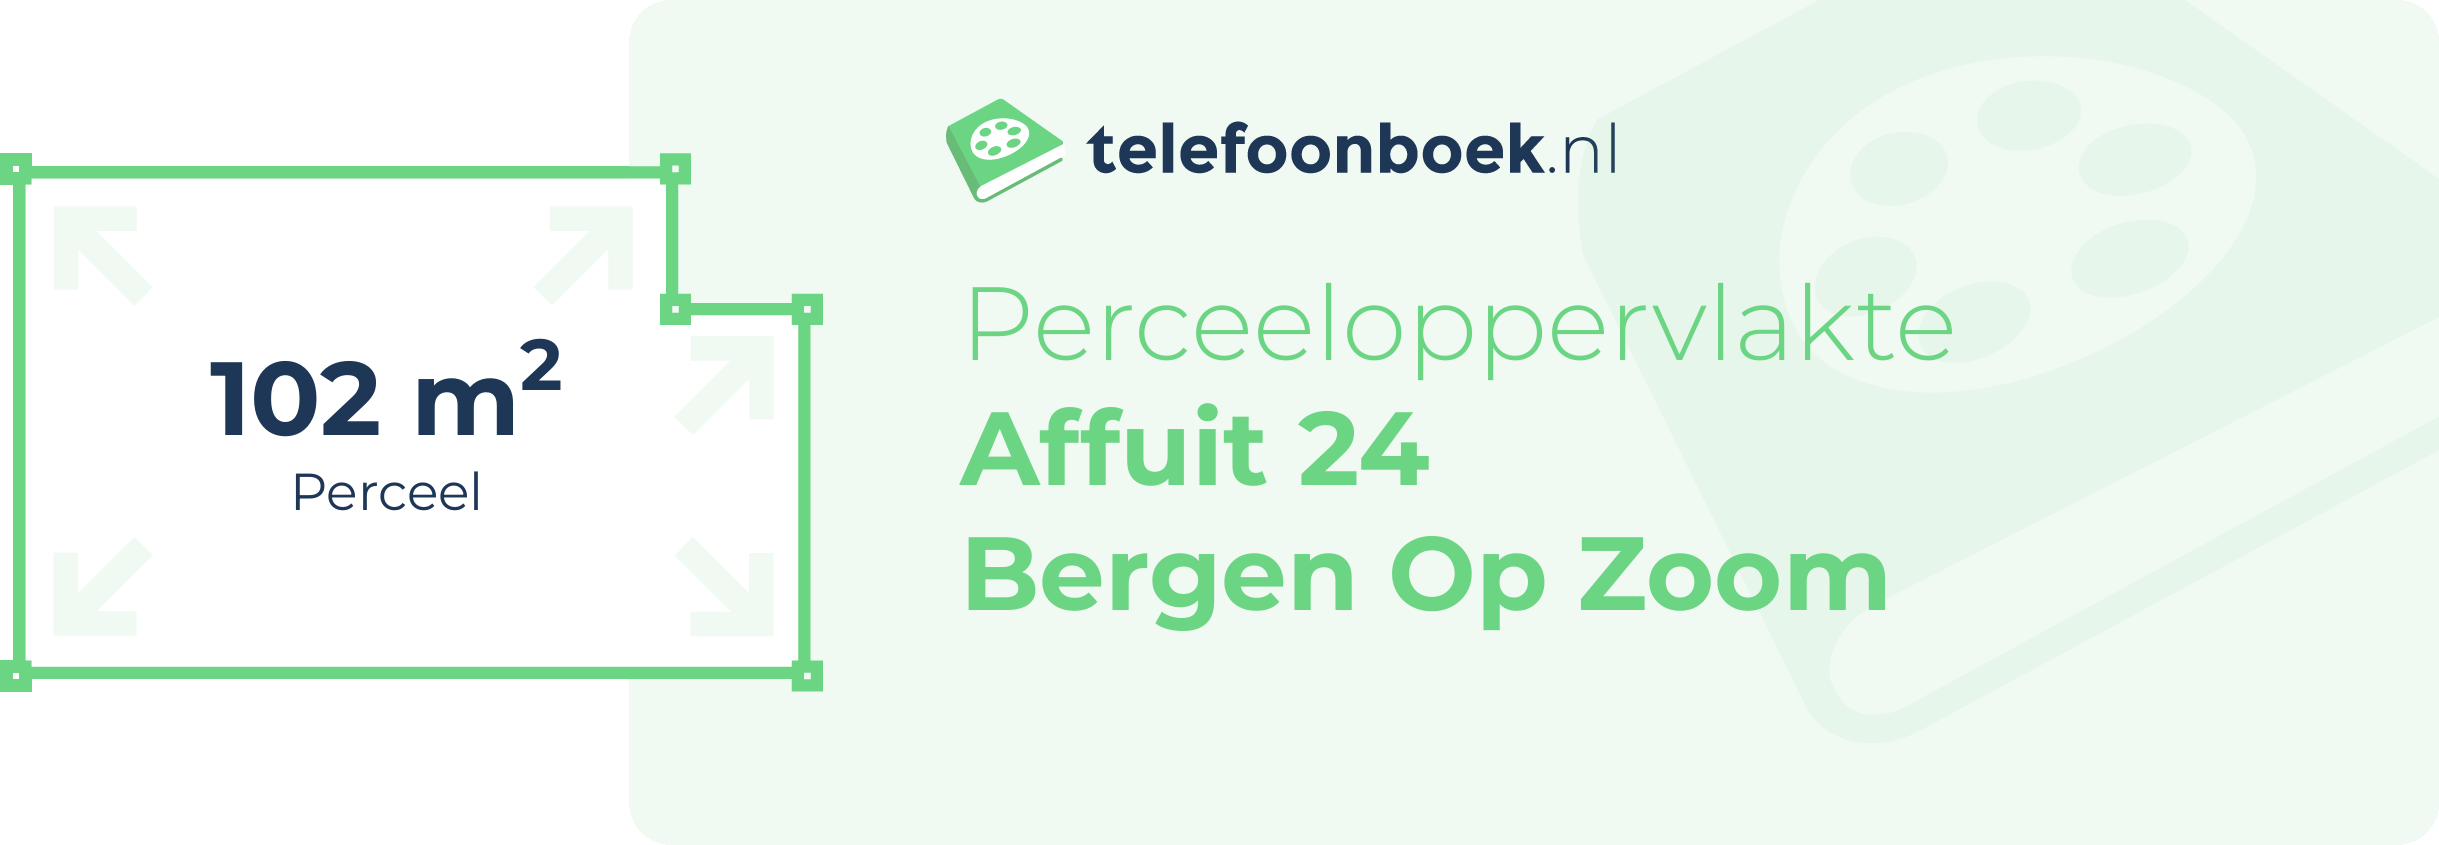 Perceeloppervlakte Affuit 24 Bergen Op Zoom